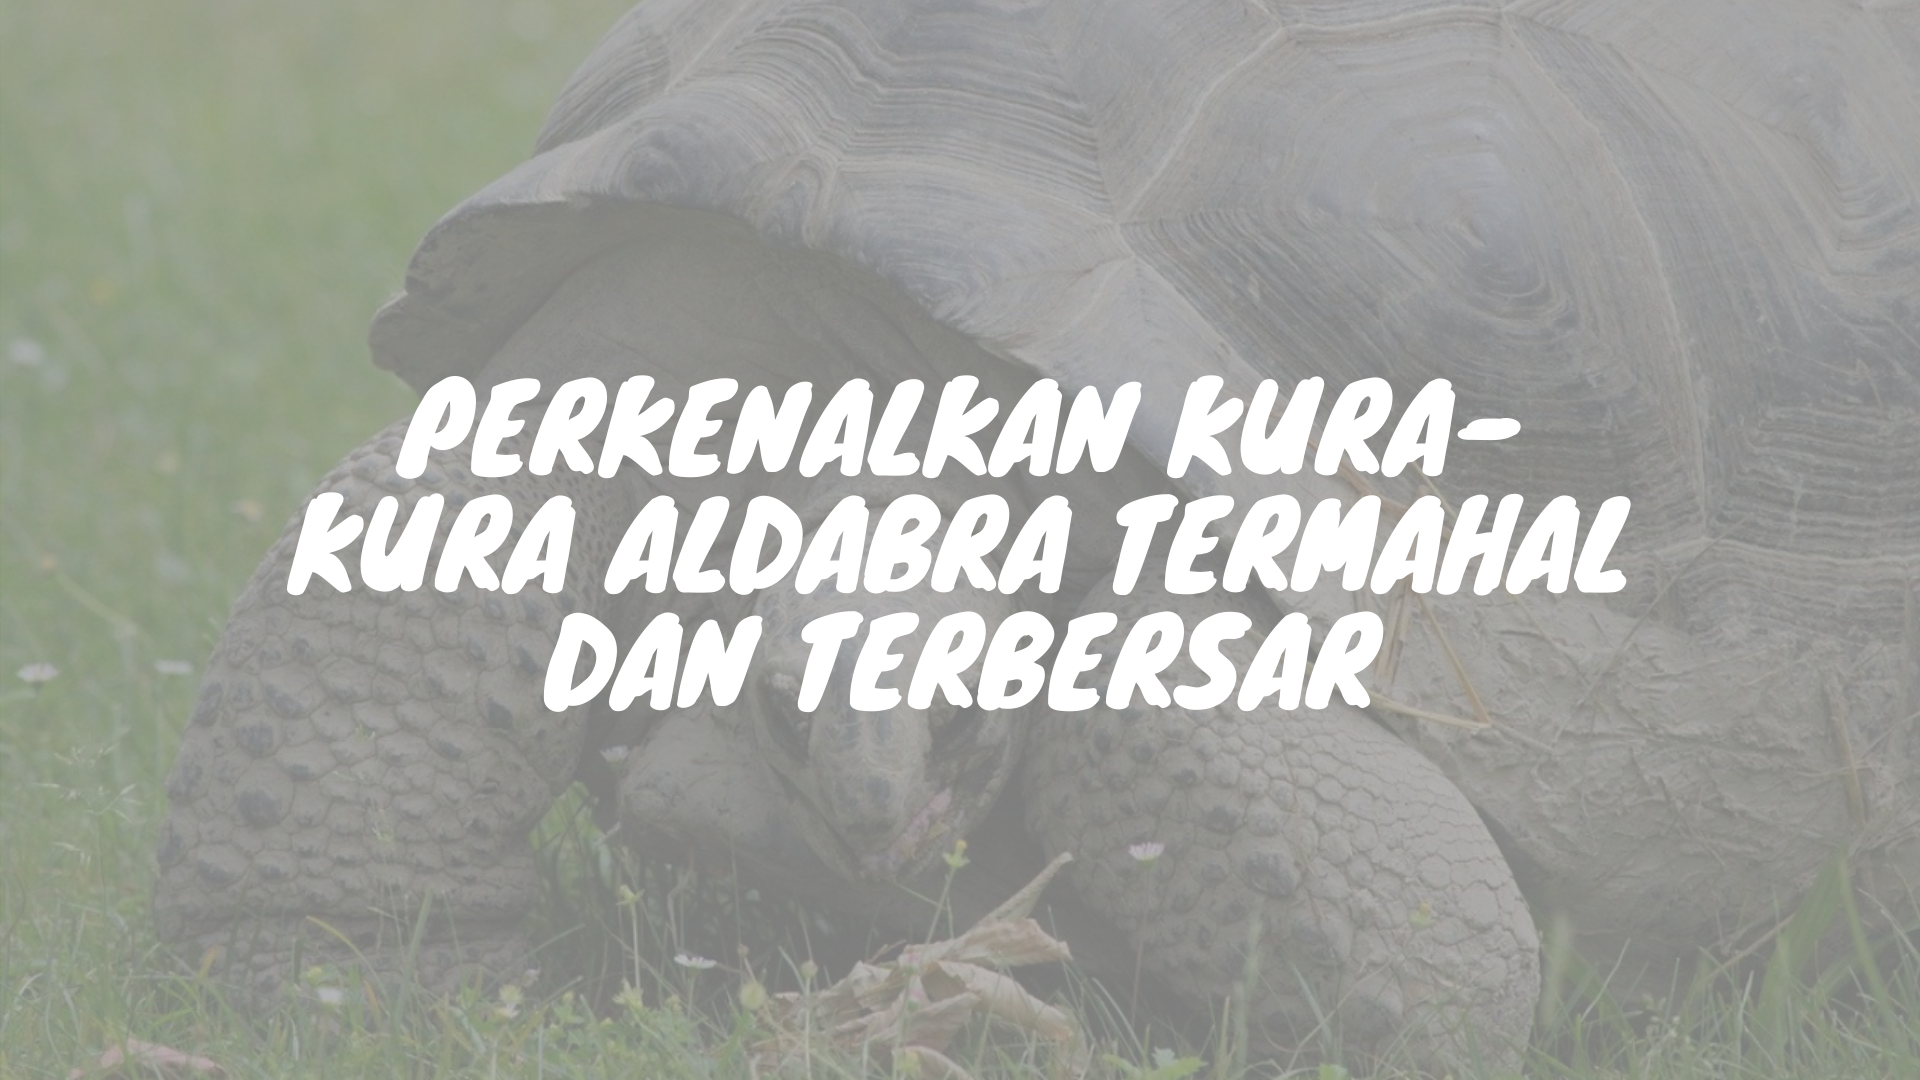 Kura-kra termahal Aldabra yang mencapai gocek selangit